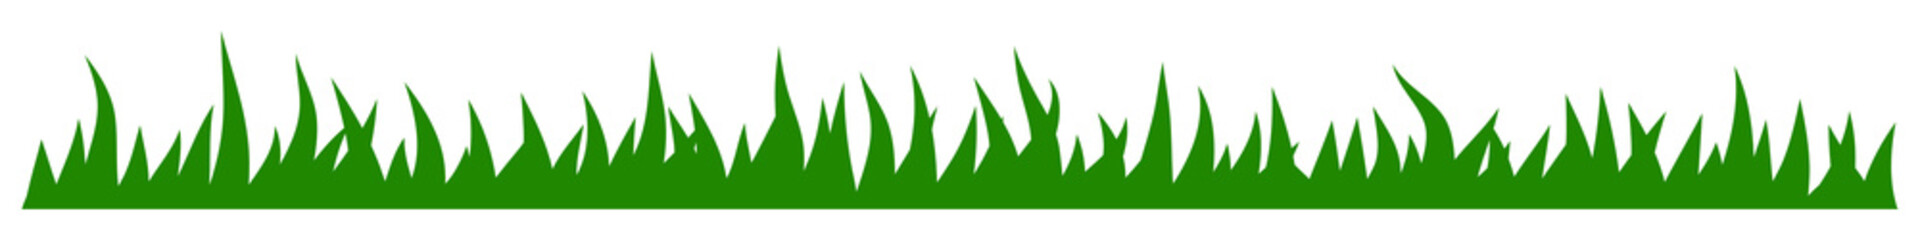 illustration of green grass